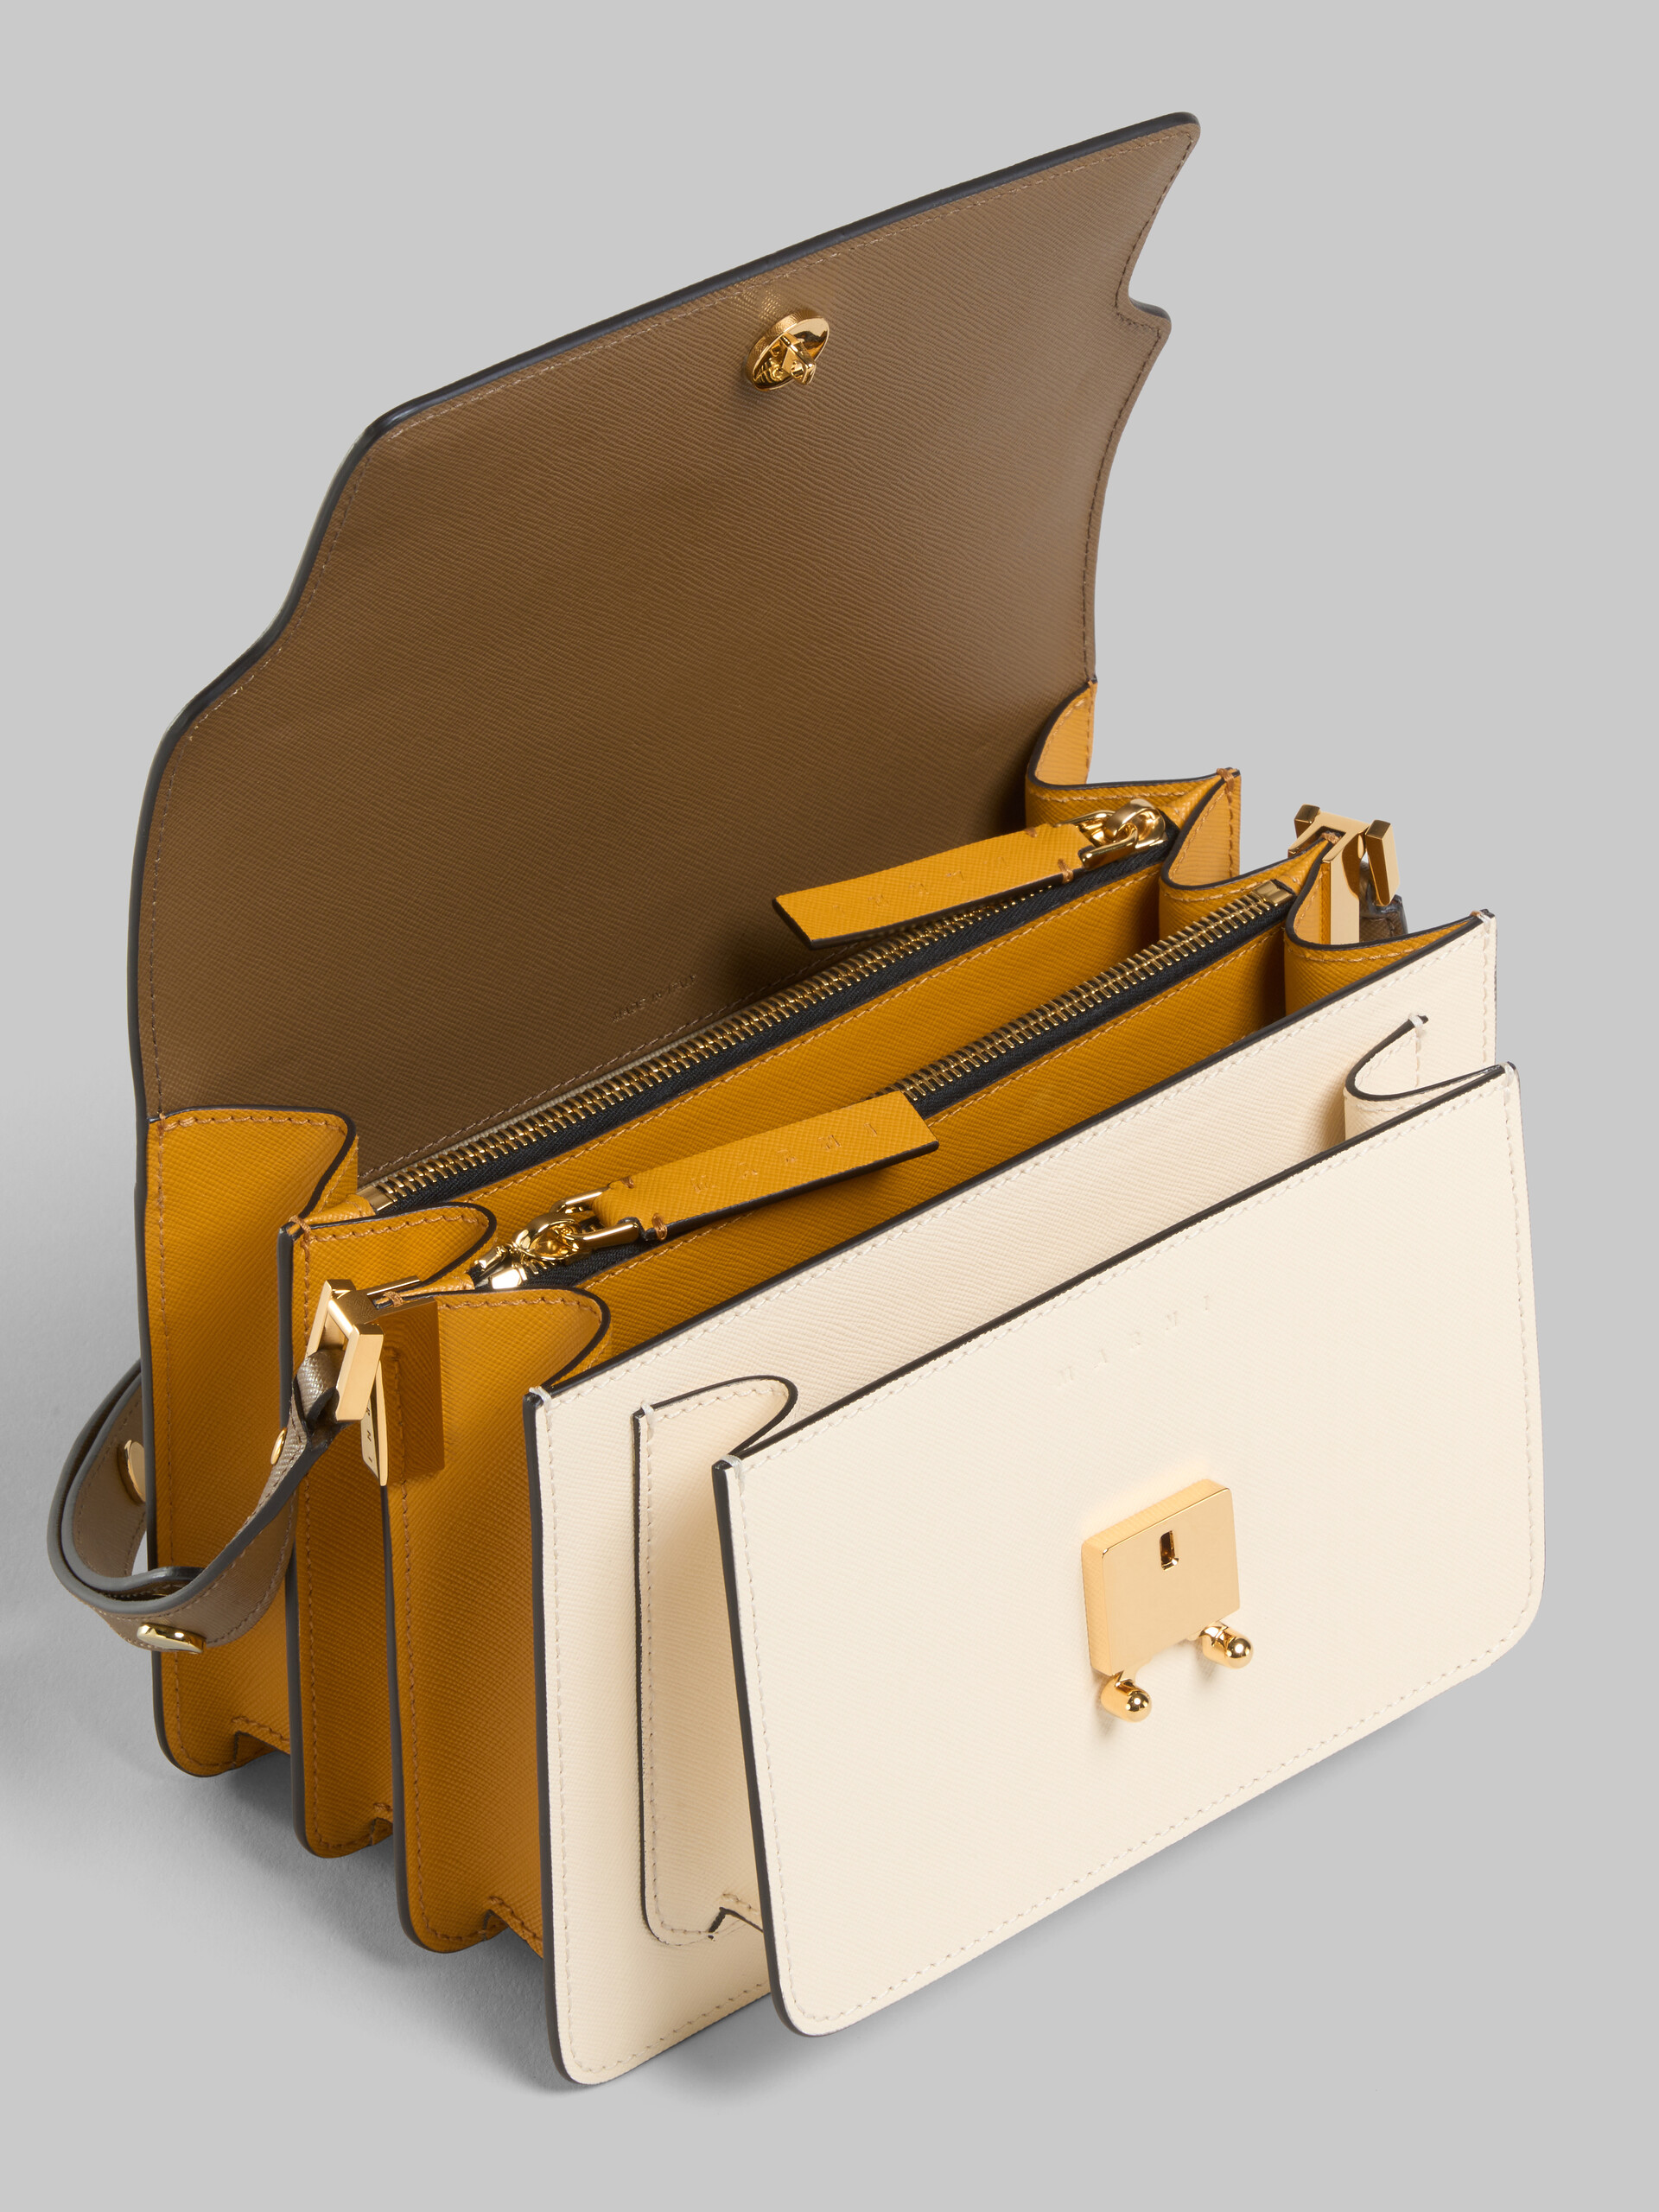 Trunk Bag E/W in white saffiano leather